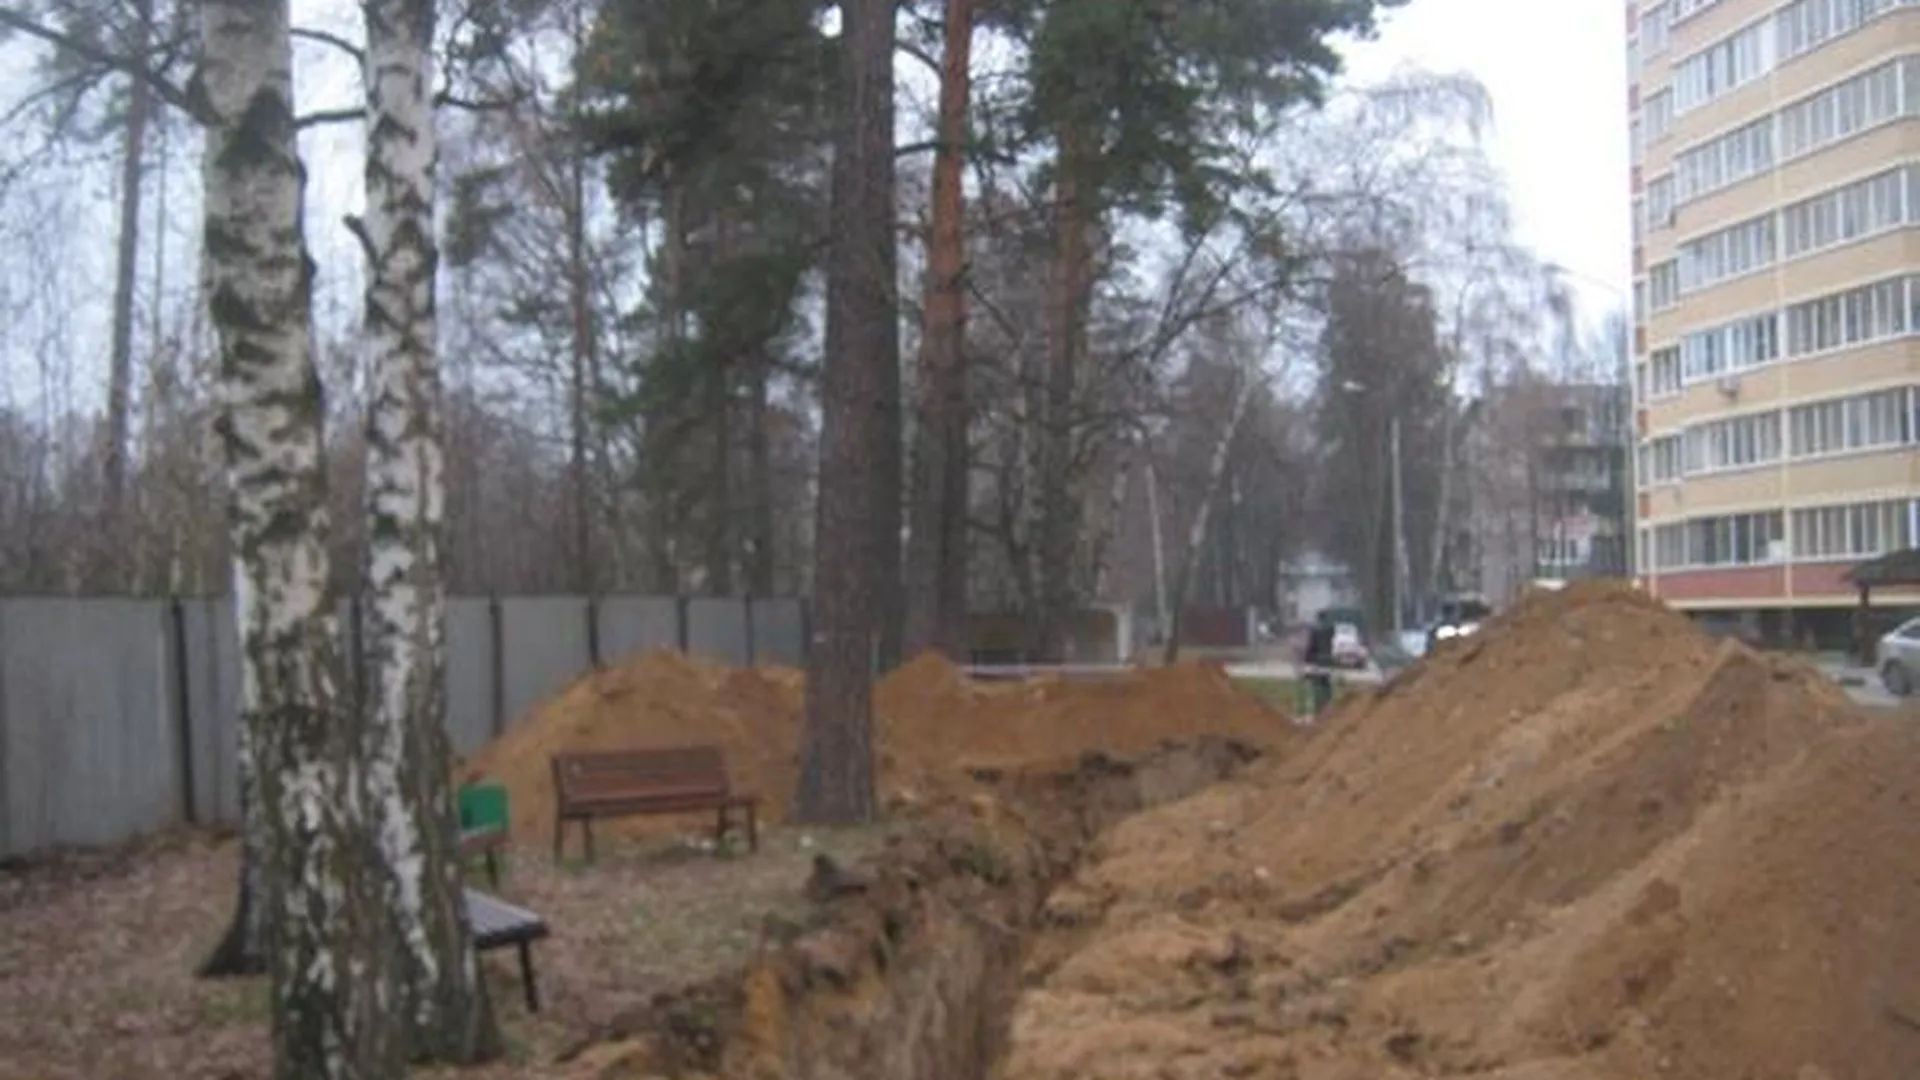 Компания в Щелково заплатила 200 тыс за земляные работы без ордера